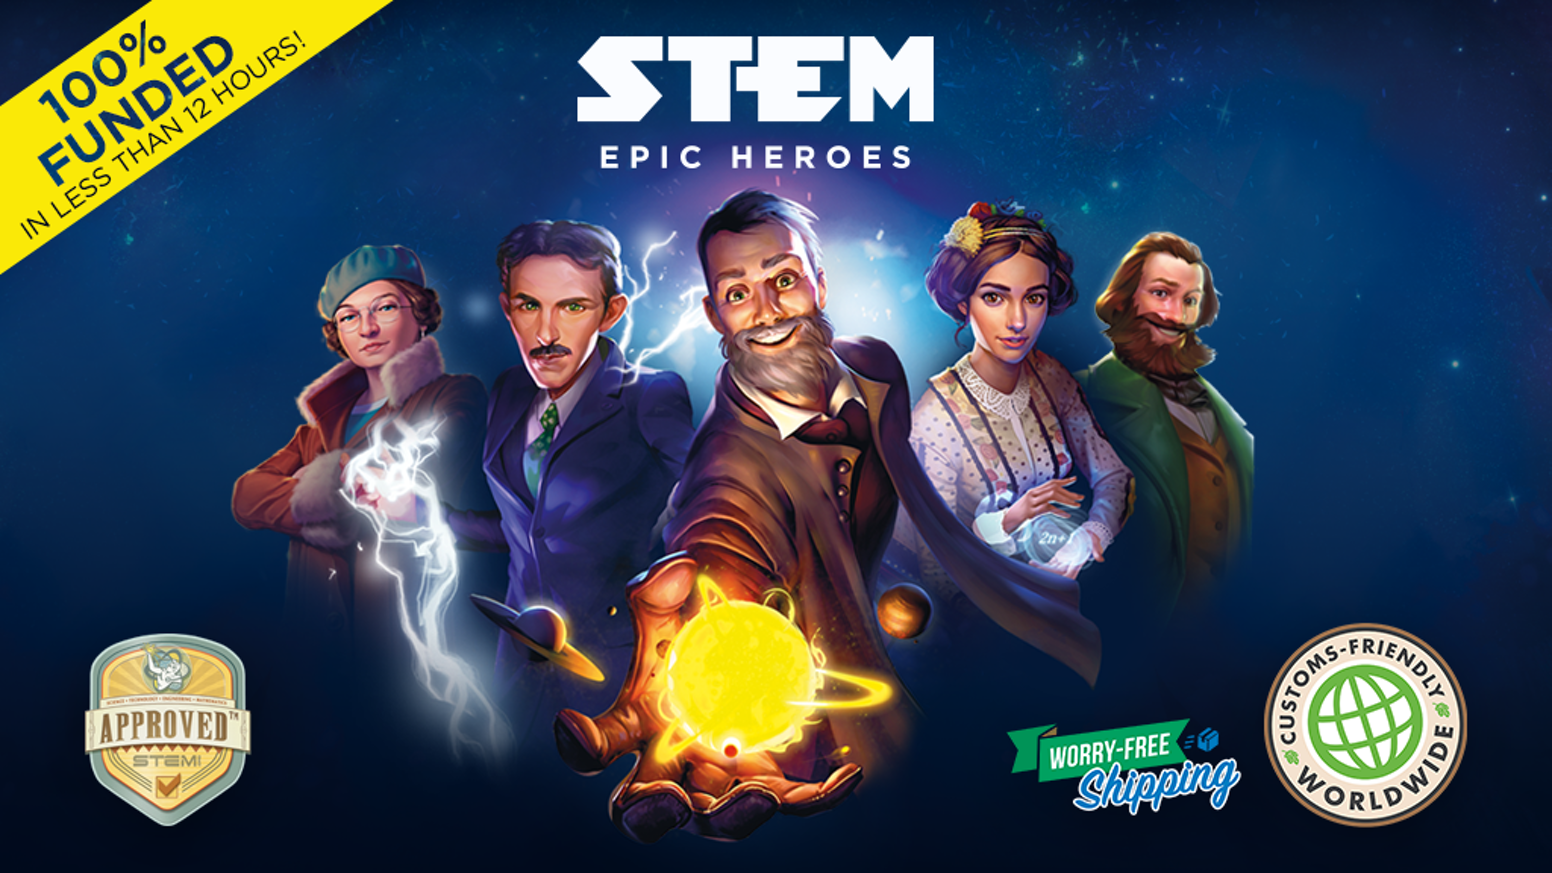 STEM epic heroes